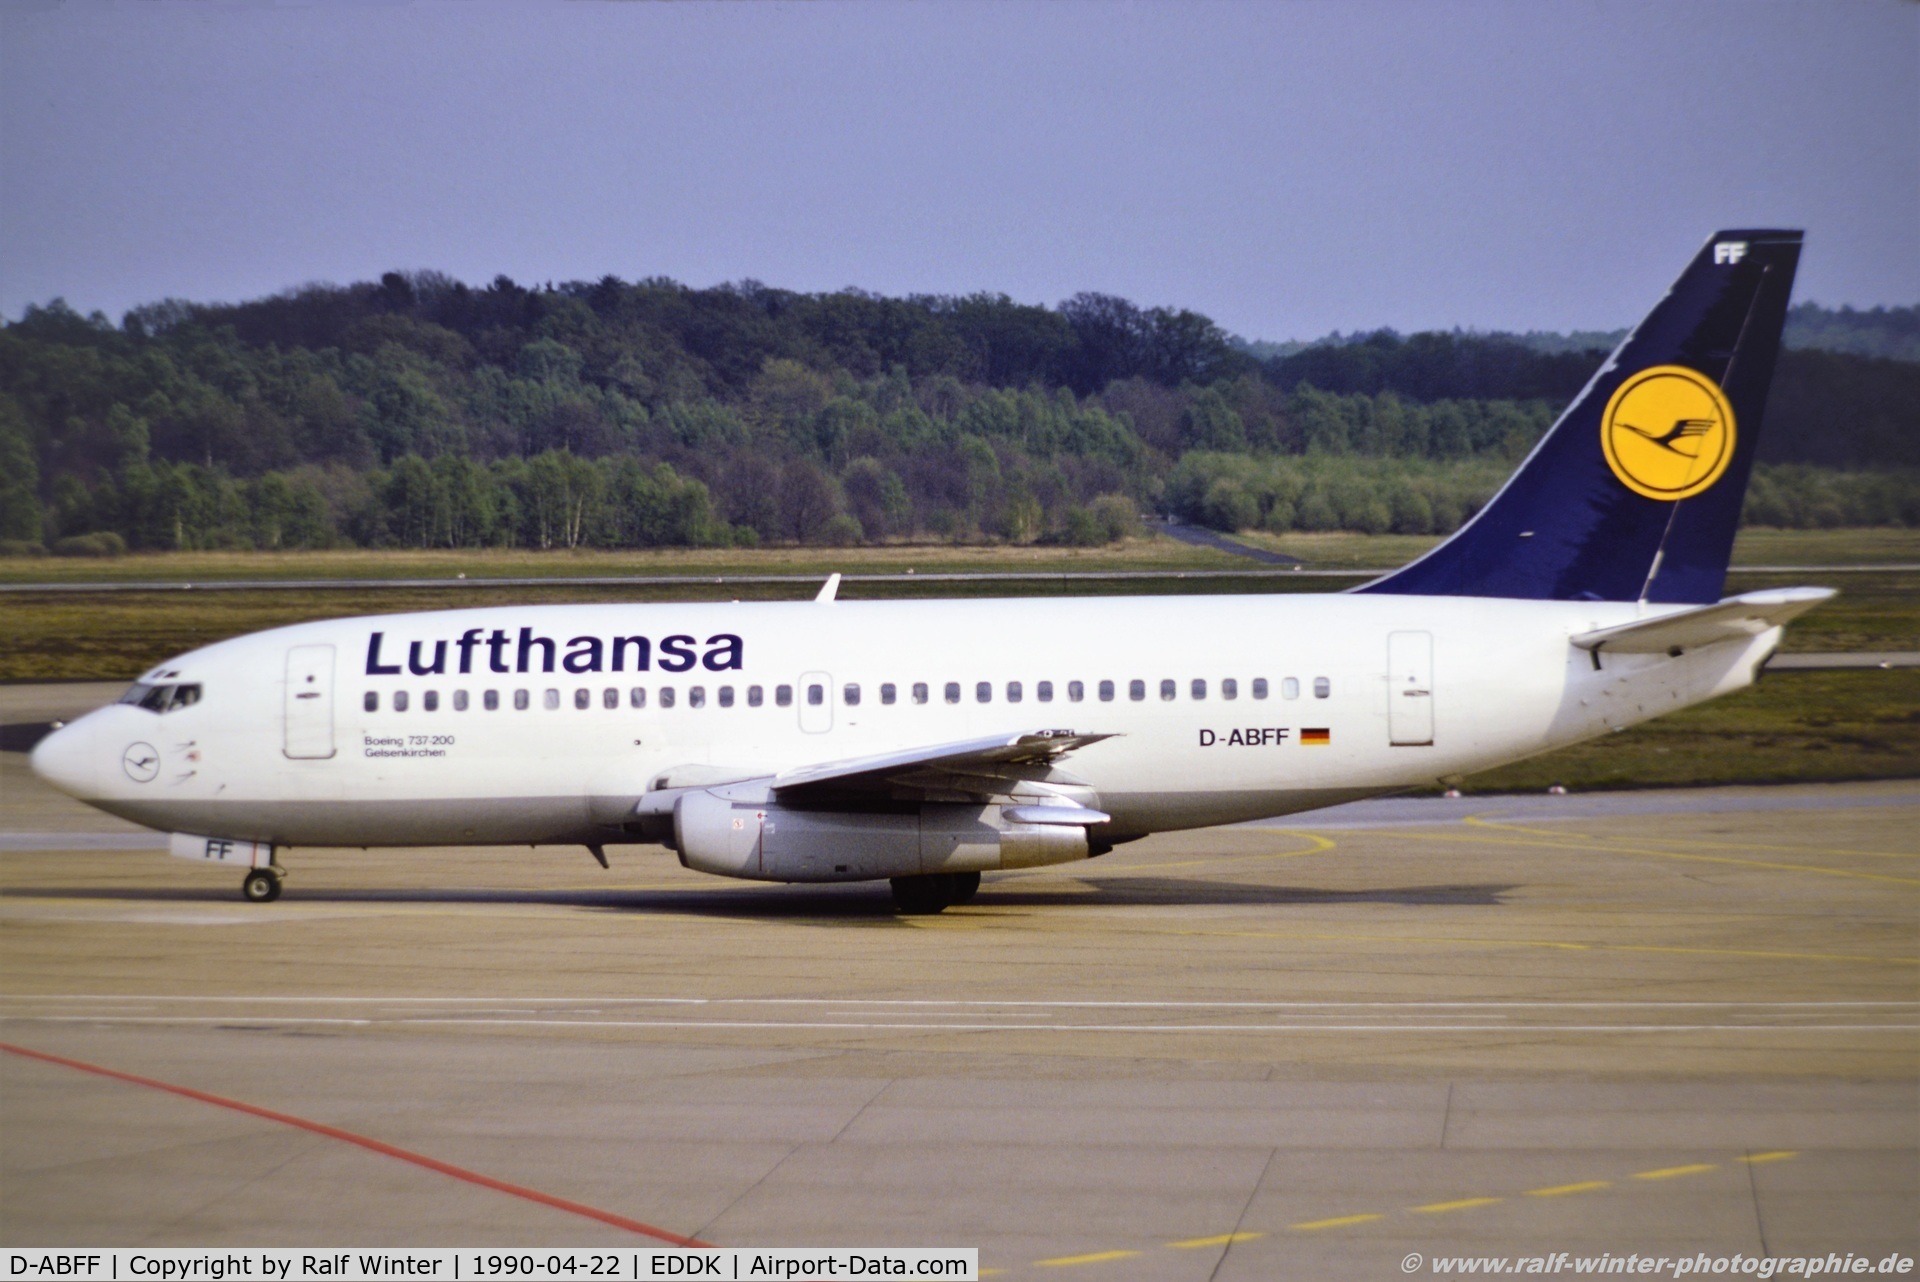 D-ABFF, 1980 Boeing 737-230 C/N 22117, Boeing 737-230 - LH DLH Lufthansa 'Gelsenkirchen' ex. N1786B - 22117 - D-ABFF - 22.04.1990 - CGN